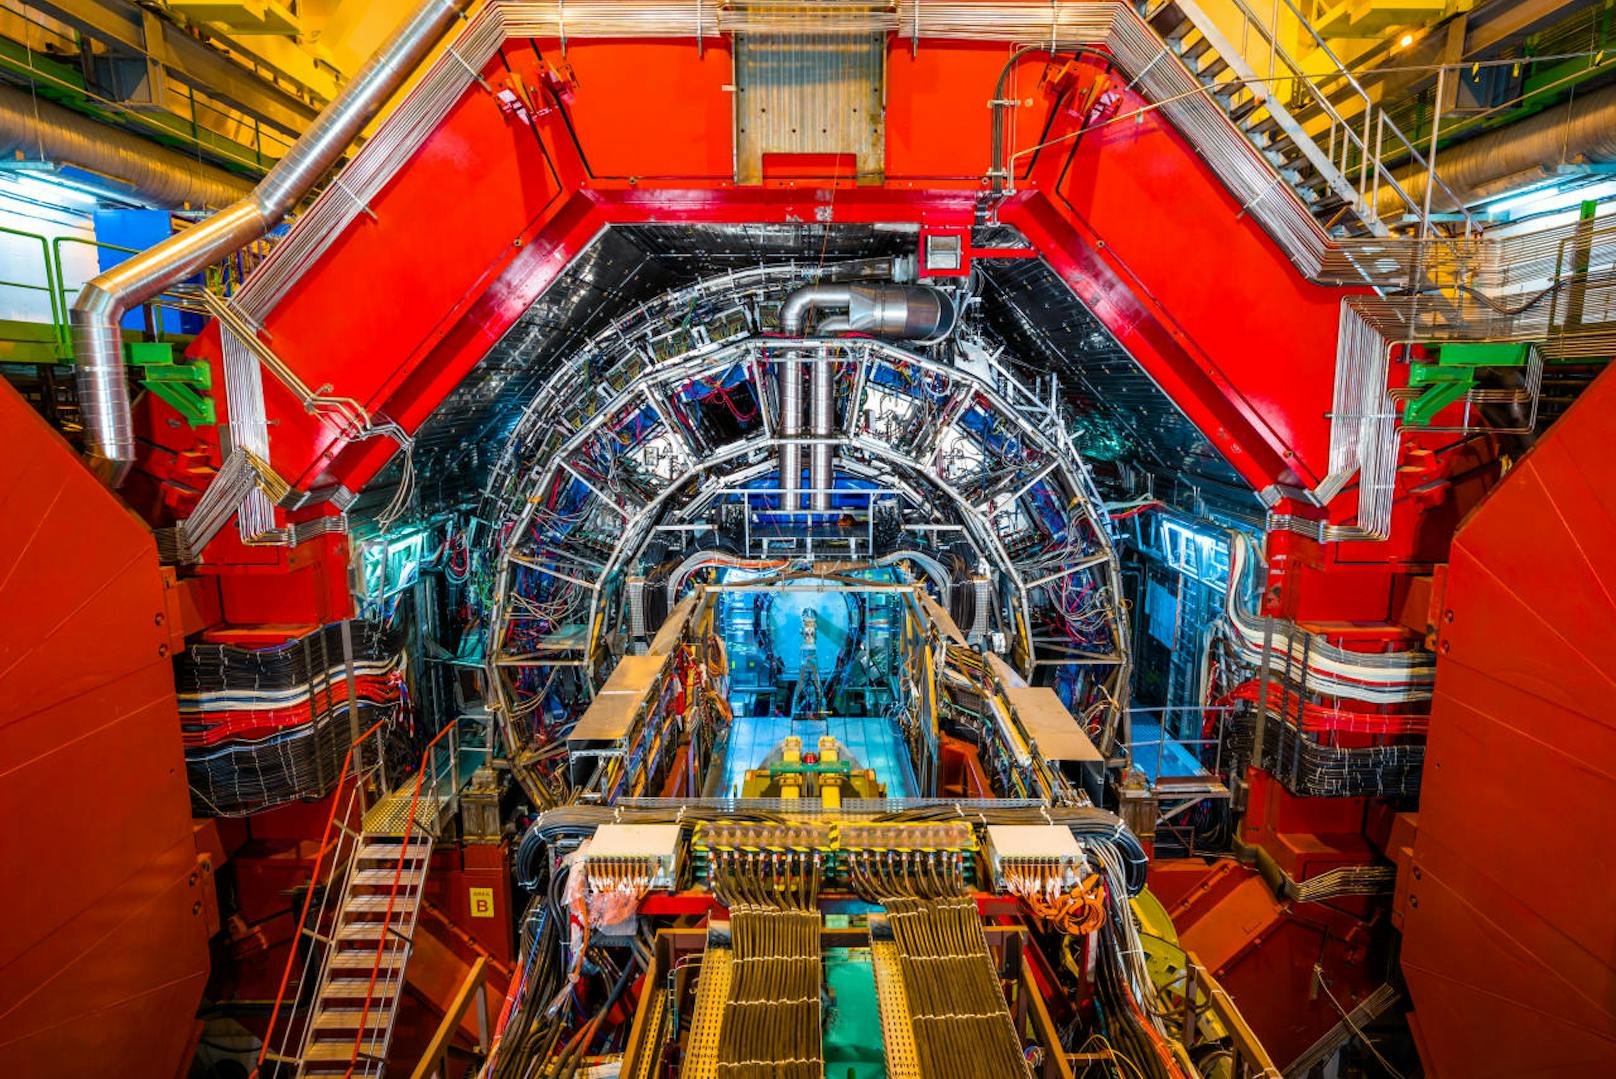 Am berühmtesten ist wohl der Large Hadron Collider, der weltweit grösste Teilchenbeschleuniger, an dessen Bau über 10.000 Wissenschaftler und Techniker aus über 100 Ländern beteiligt waren. Bei einem Besuch, der jedoch Monate im Voraus gebucht werden muss, erfährt man mehr über die Hintergründe.